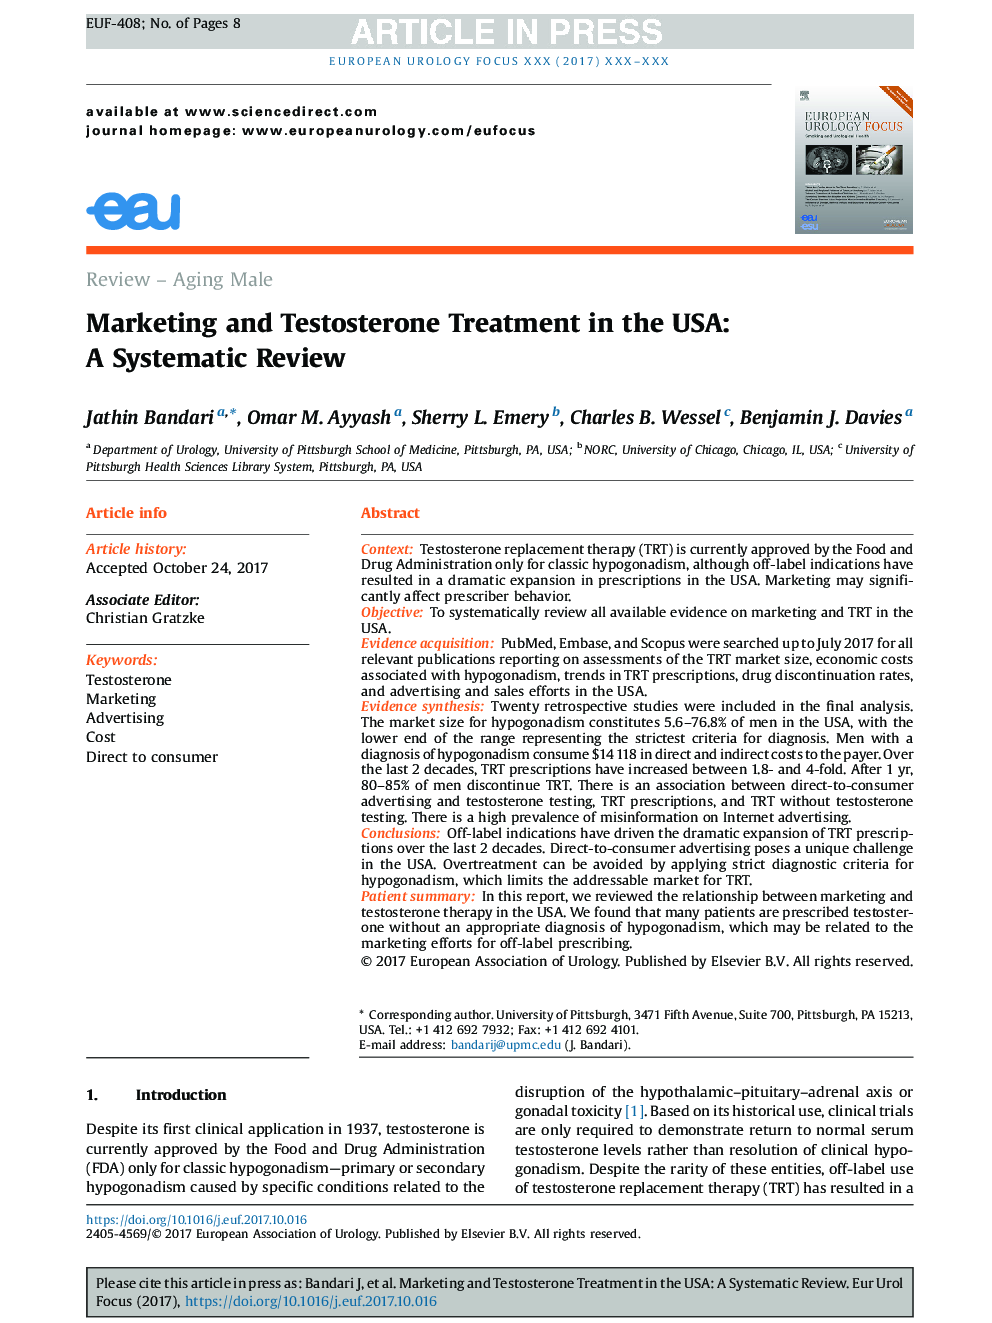 بازاریابی و درمان تستوسترون در ایالات متحده: یک بررسی سیستماتیک 